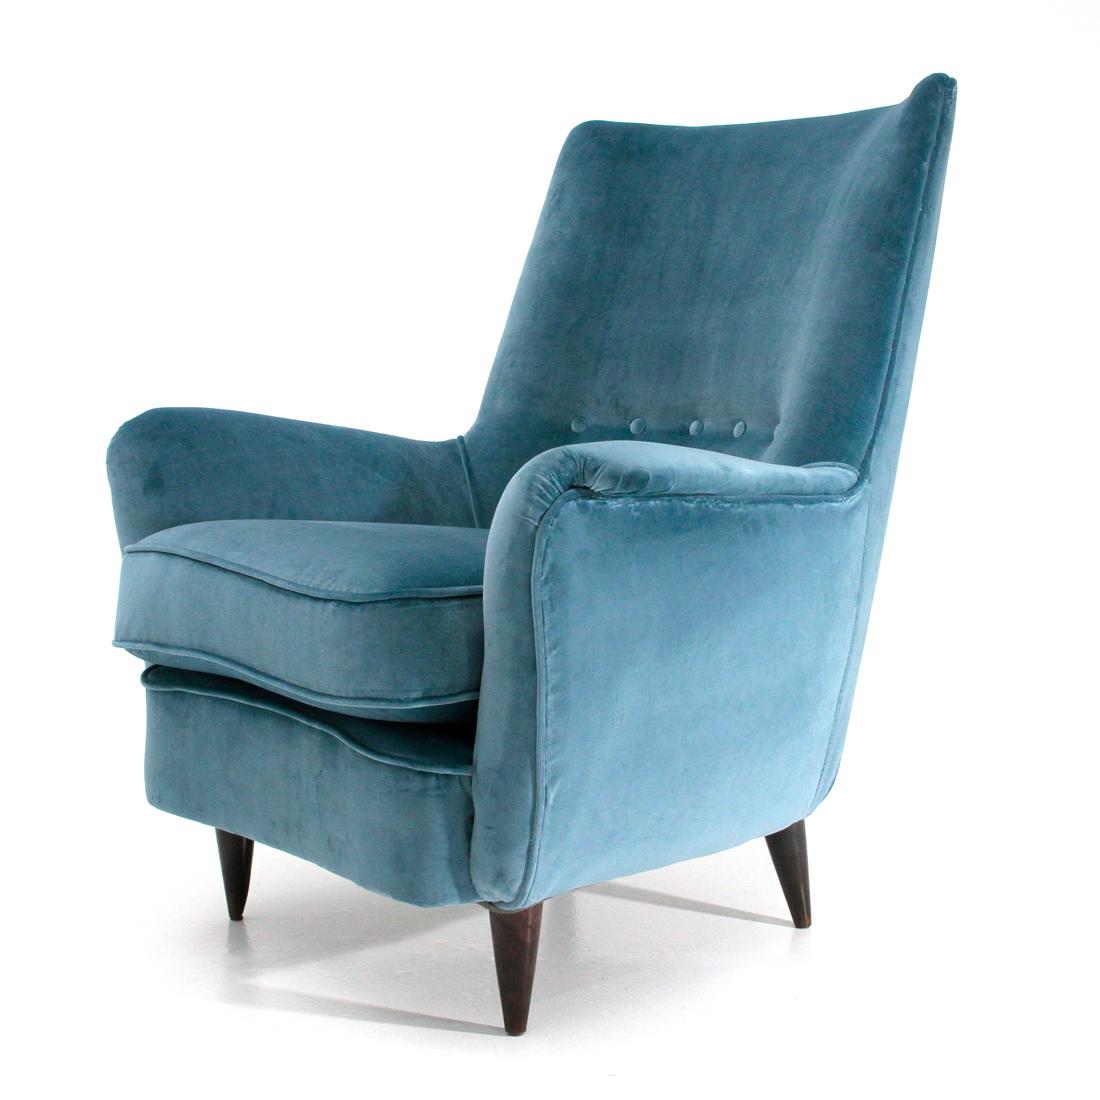 Mid-20th Century Italian Midcentury Light Blu Velvet Armchair, 1950s